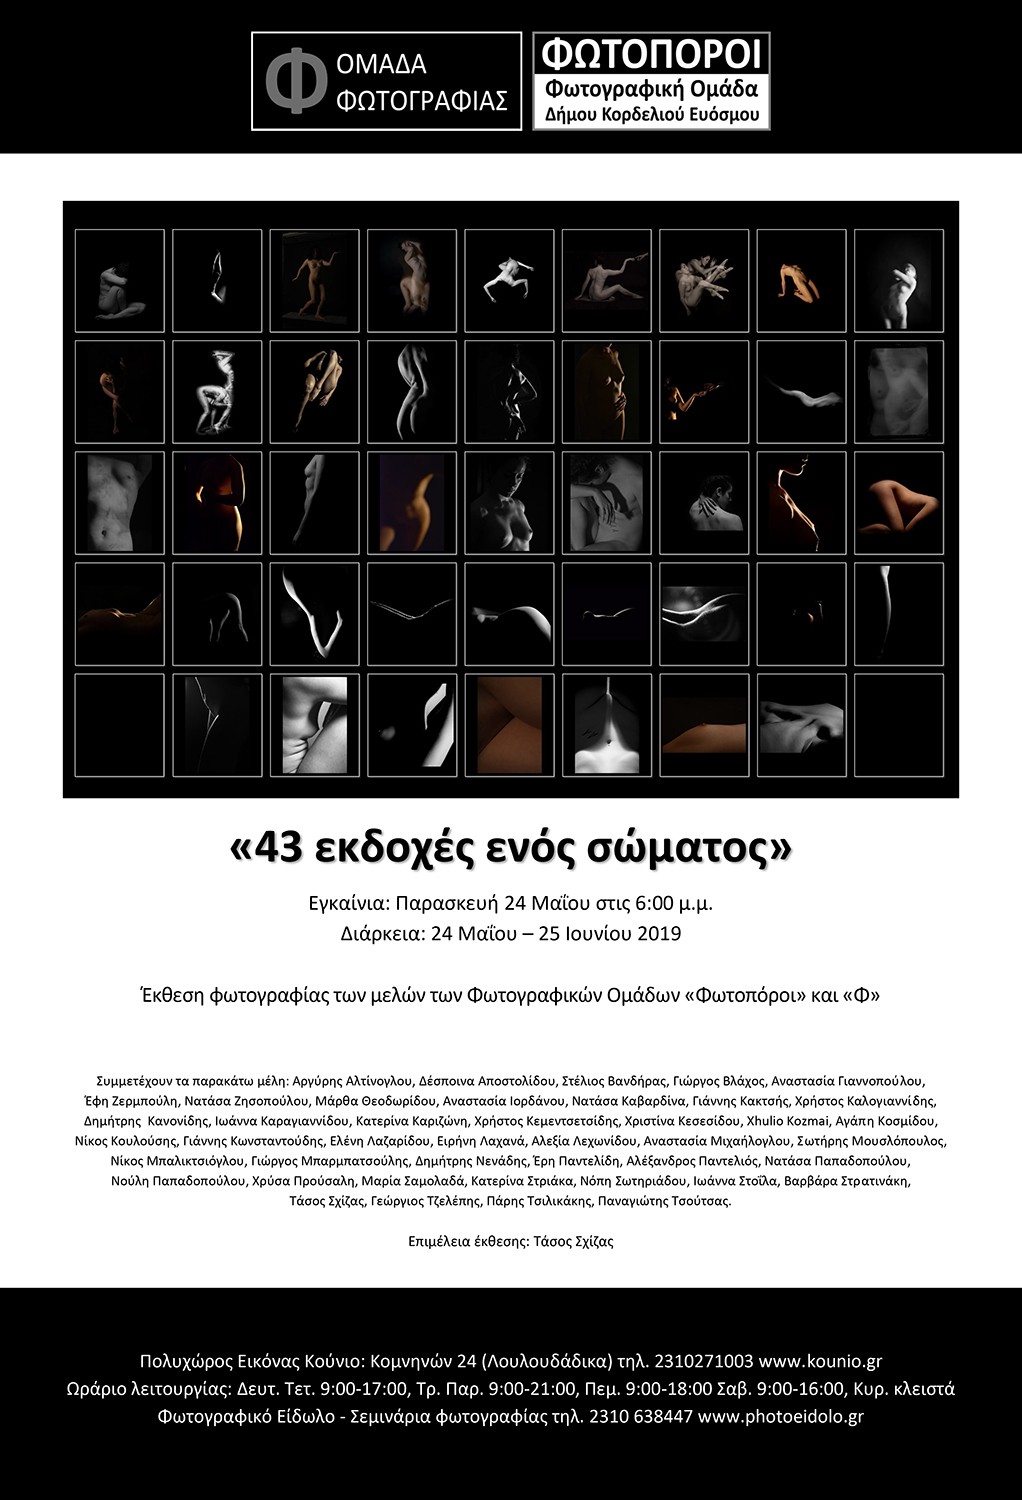 43 φωτογραφικές ματιές στο ίδιο σώμα